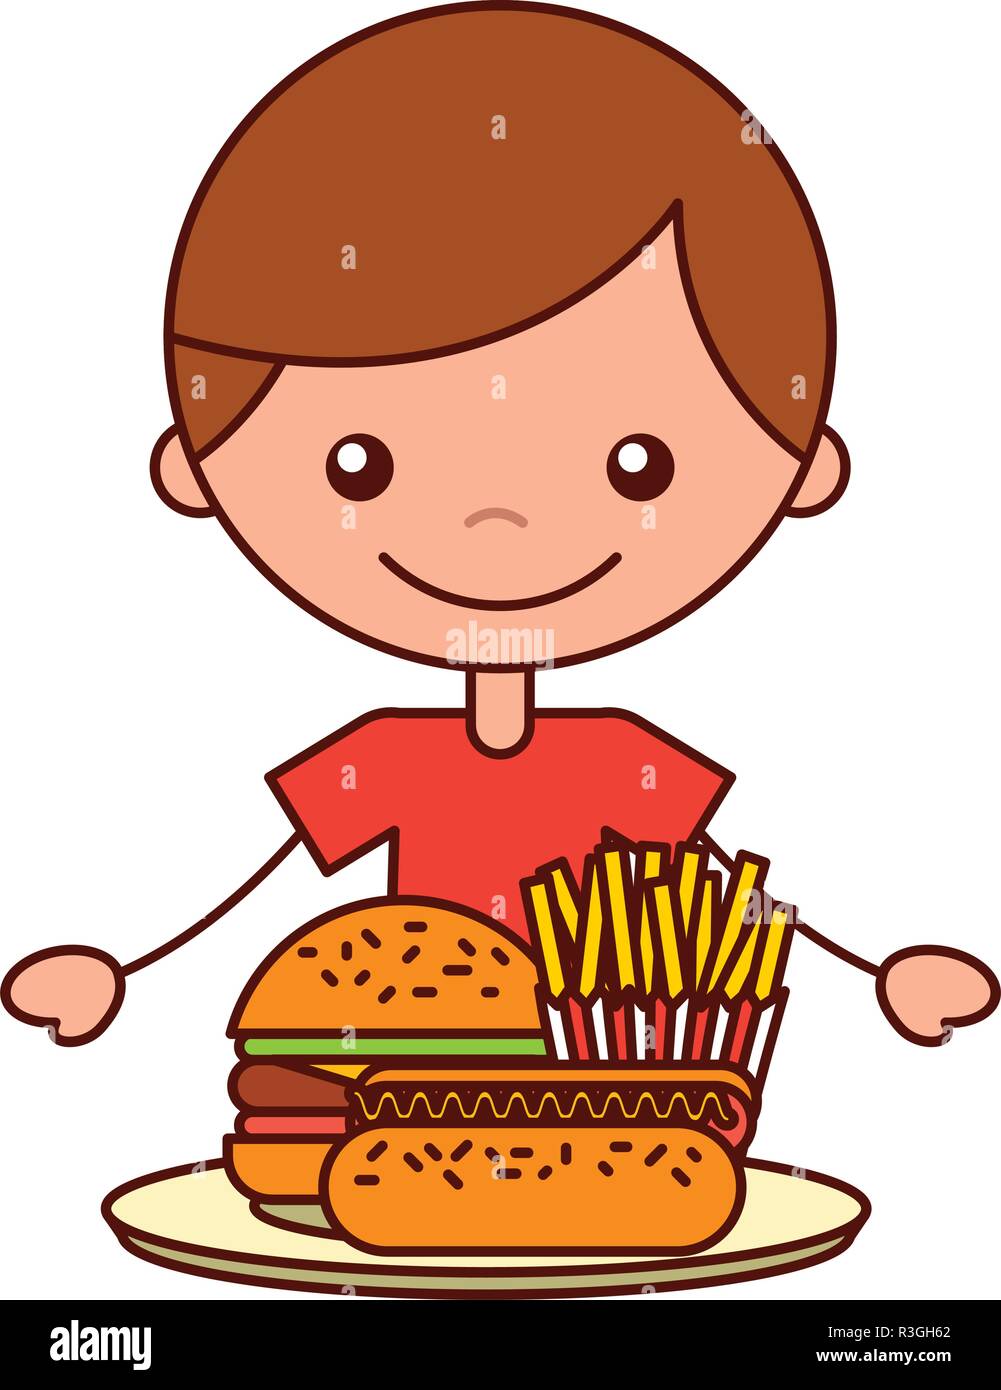 Garçon avec burger hot dog et frites Illustration de Vecteur